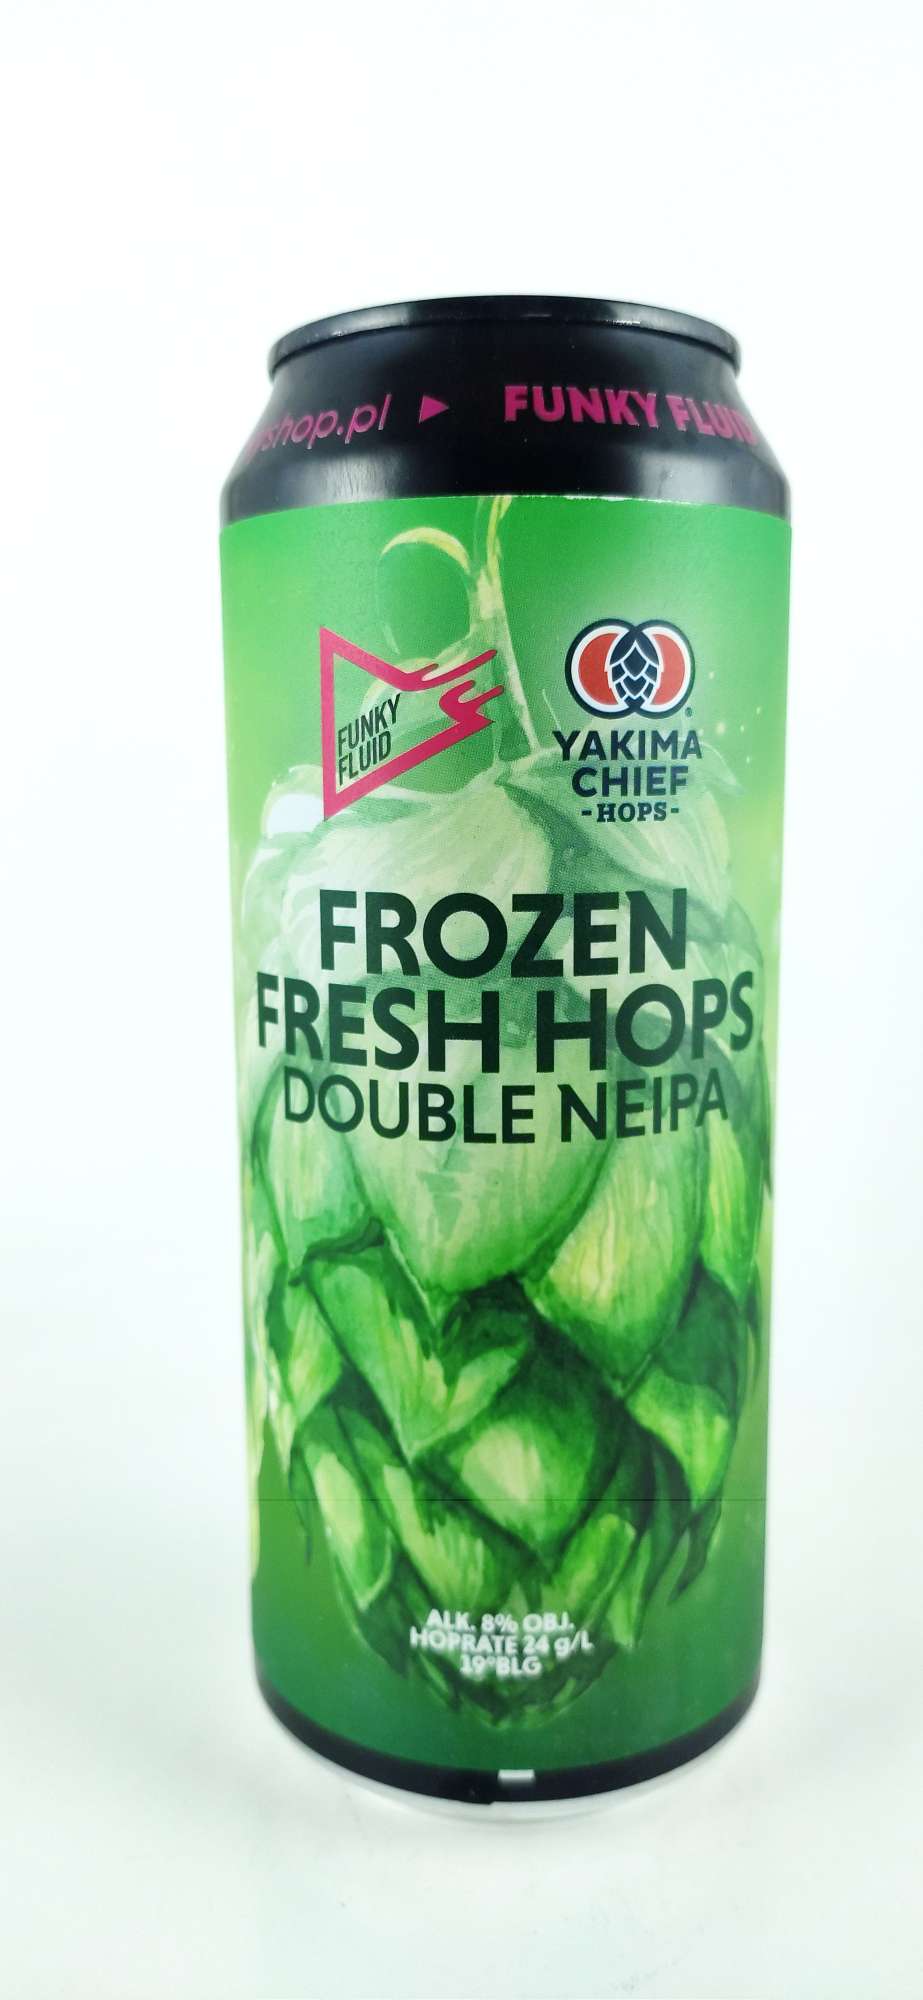 Funky Fluid Frozen Fresh Hops Double NEIPA 19°